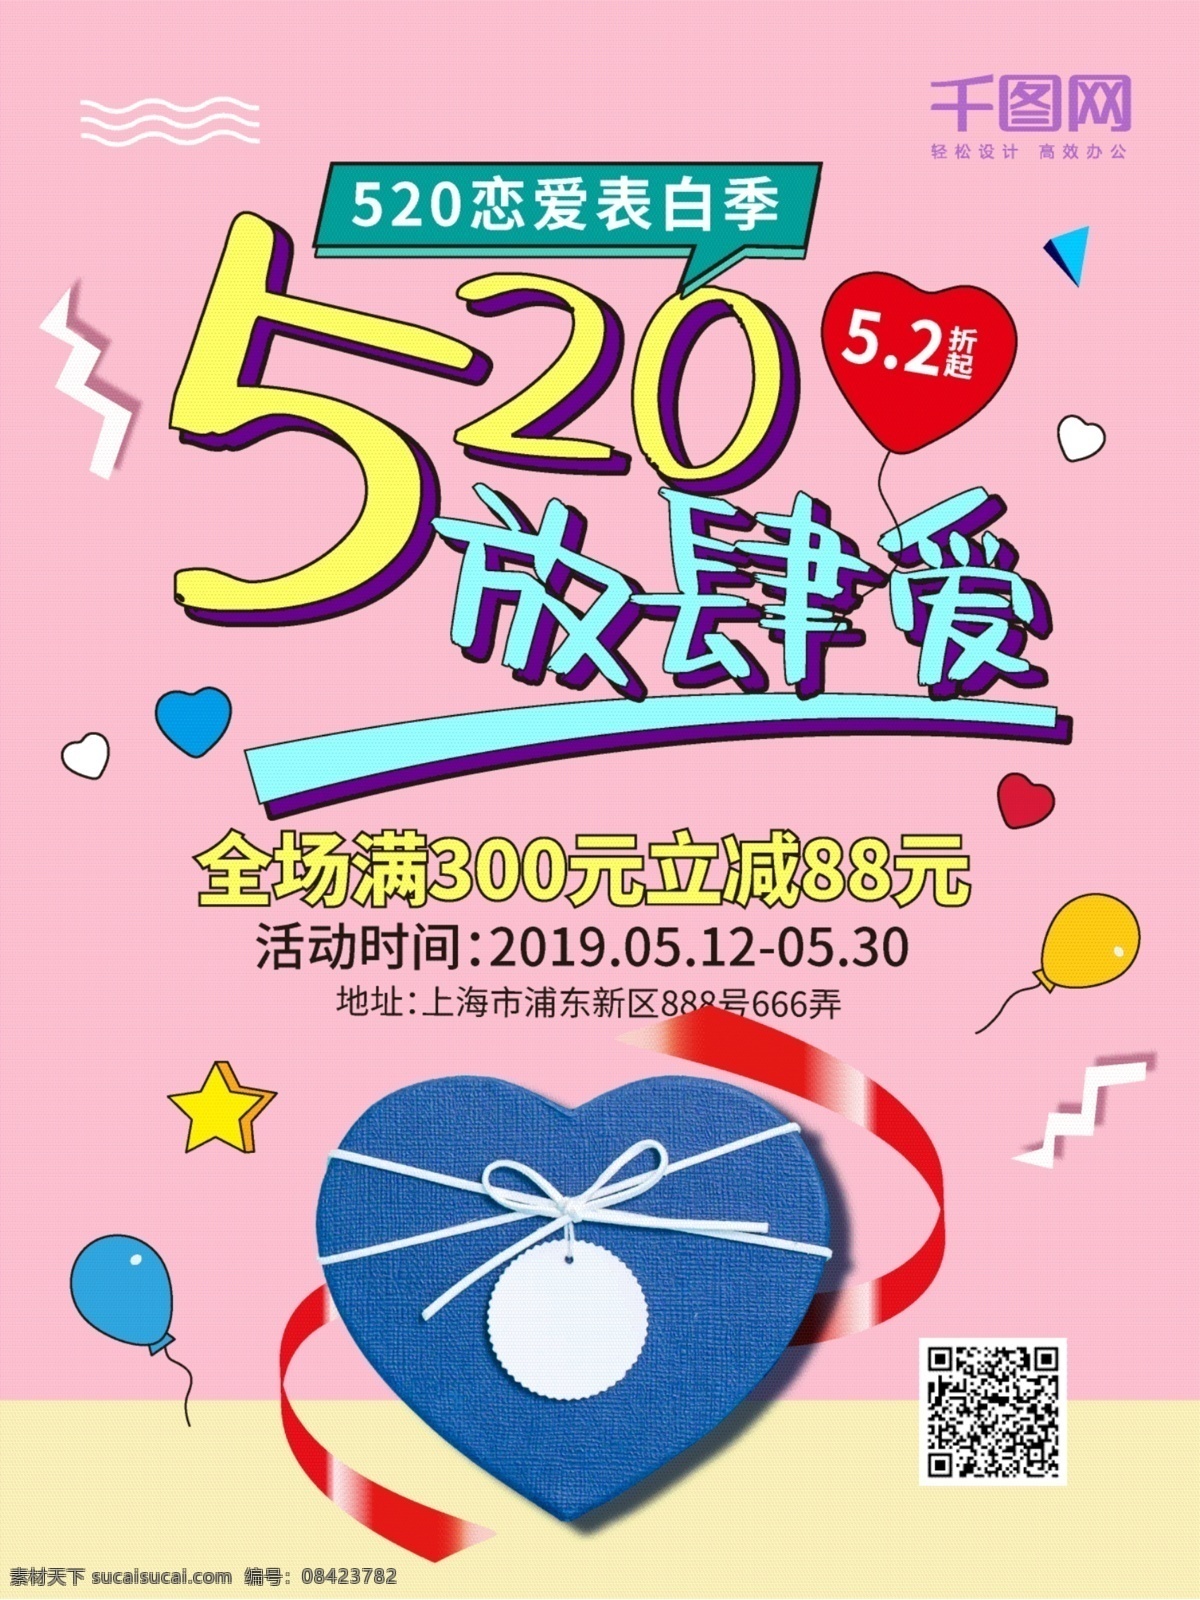 520 节日 促销 海报 浪漫 爱情 粉红 桃心